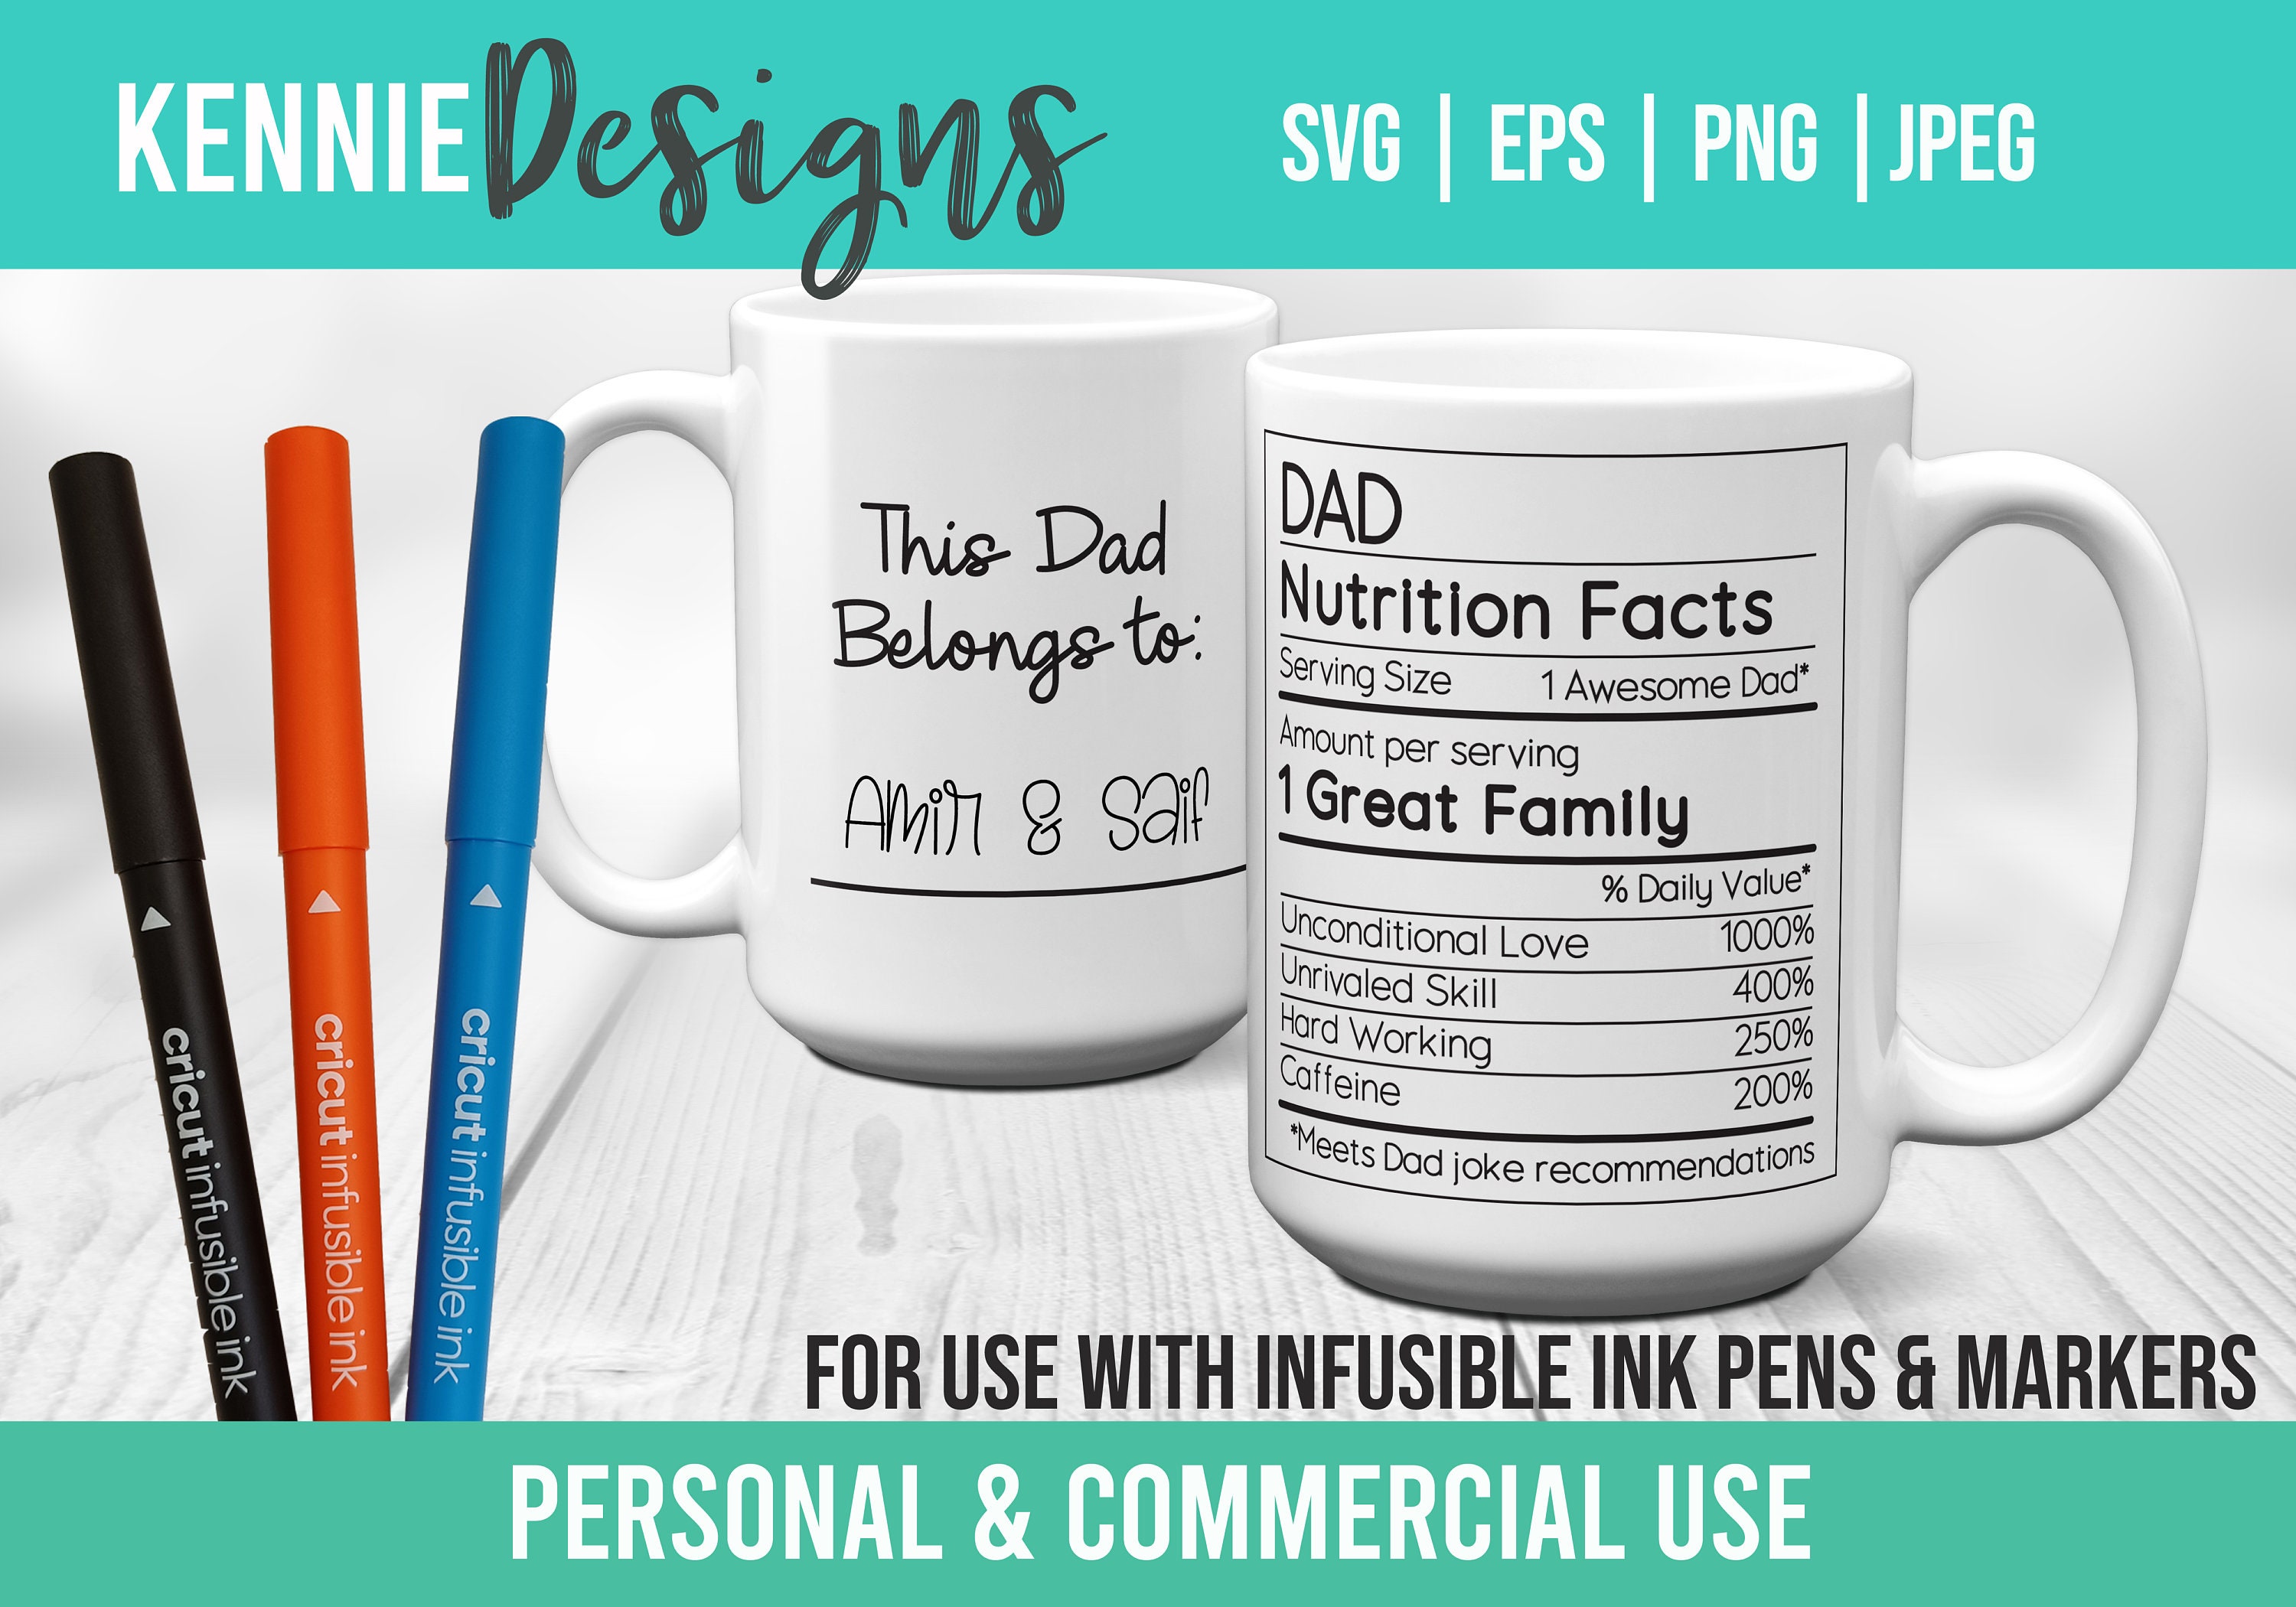 Mandala Boho Infusible Ink Mug Wrap SVG Template Customizable Use